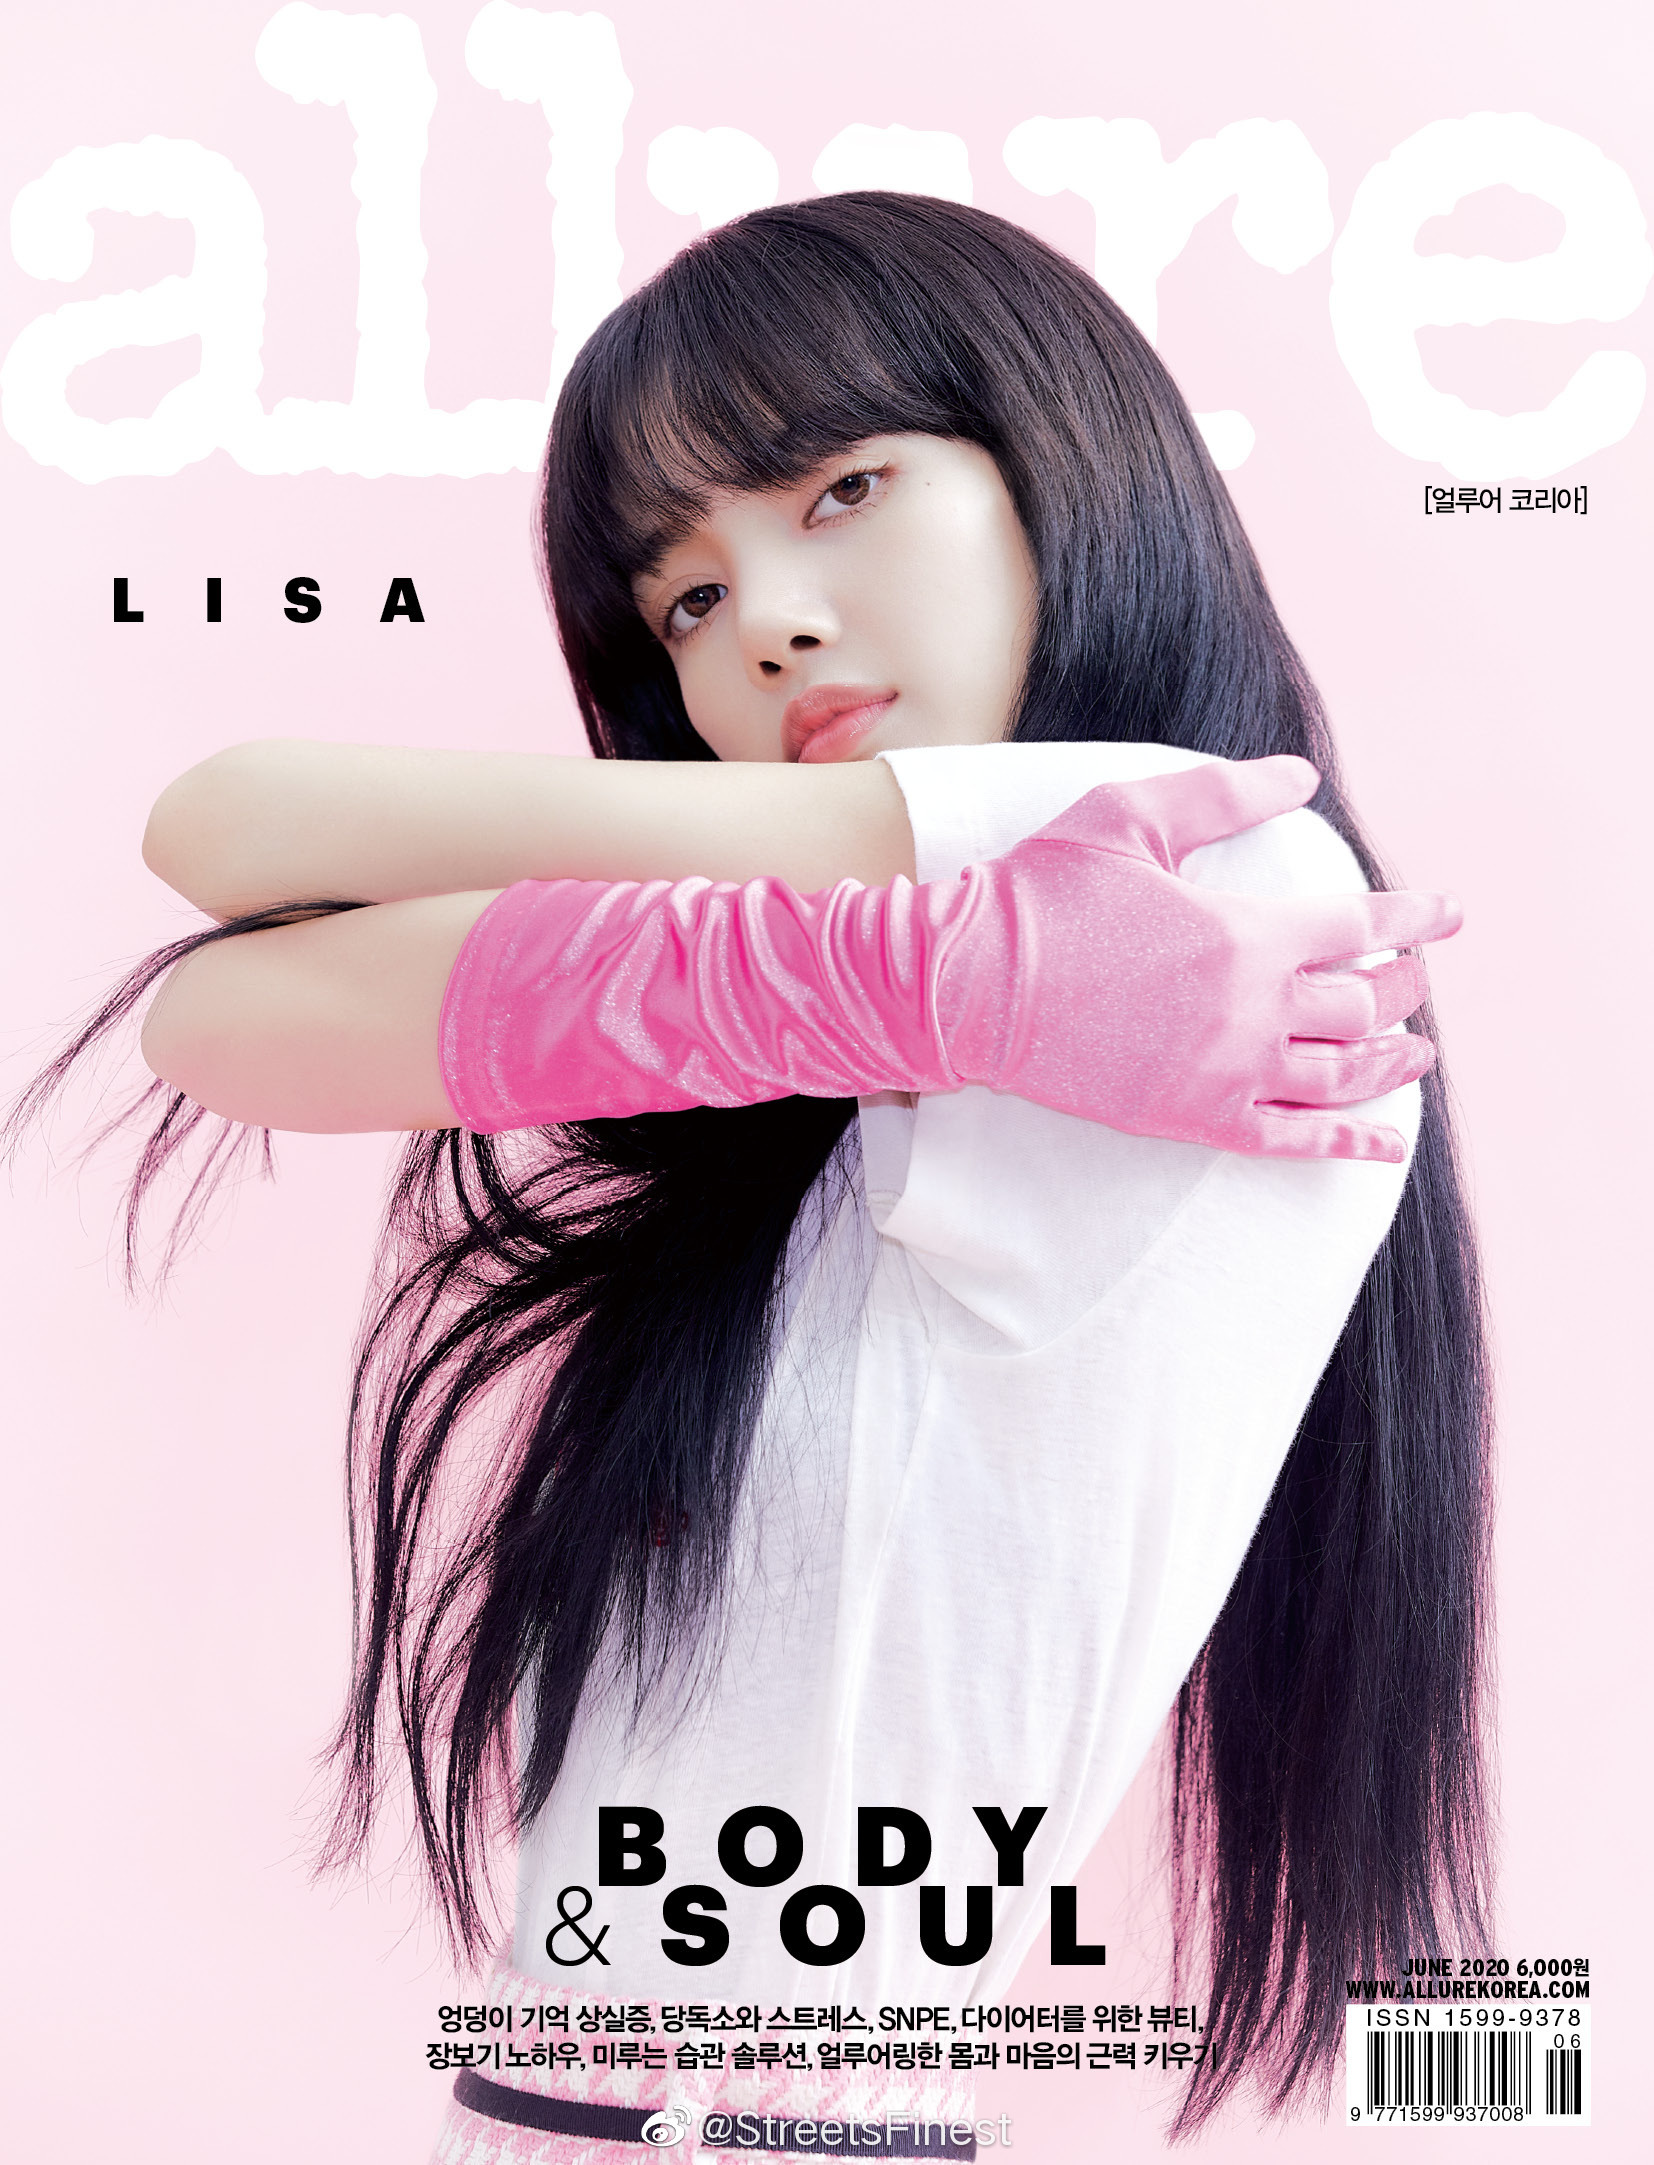 lisa登上杂志封面 造型甜美可爱!